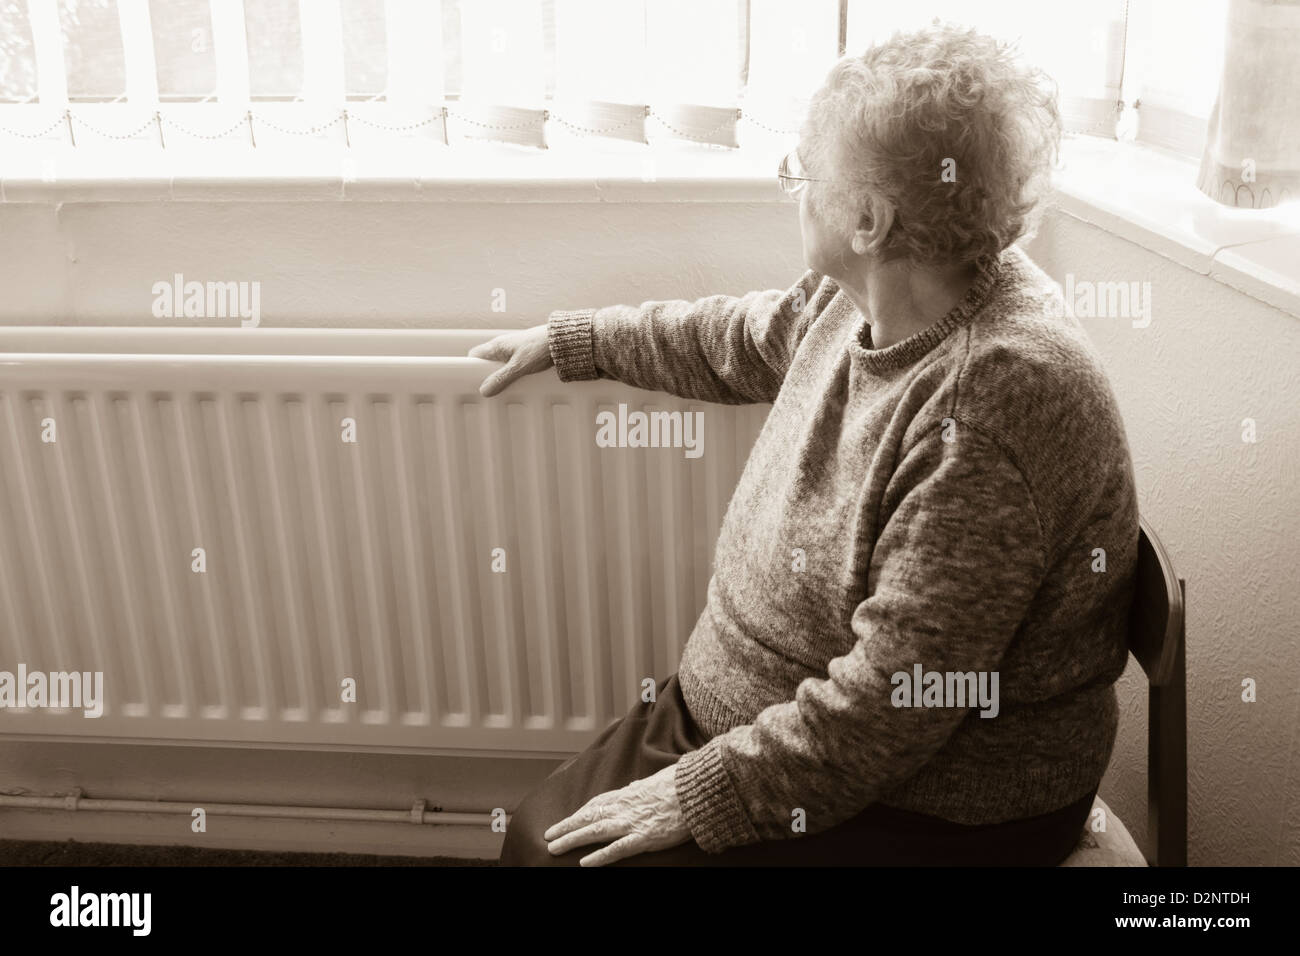 Neunzigjährige Frau mit Hand am Kühler, die aus dem Fenster blickt, Großbritannien. Coronavirus, Selbstisolation, soziale Distanzierung, Quarantäne... Konzept Stockfoto